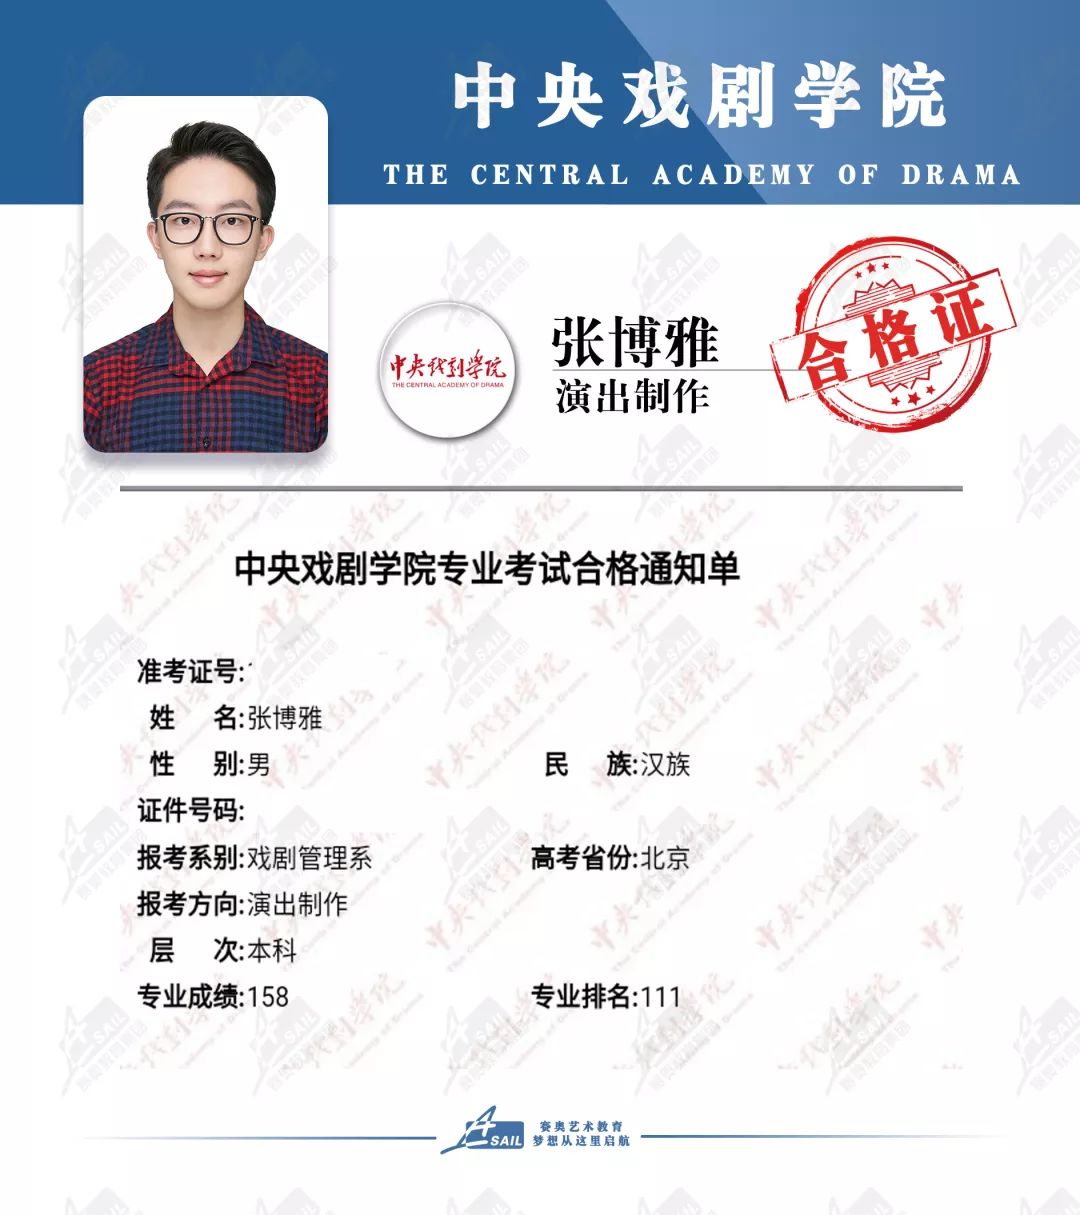 中央戏剧学院合格证 11张 北京电影学院合格证 3张 上海戏剧学院合格